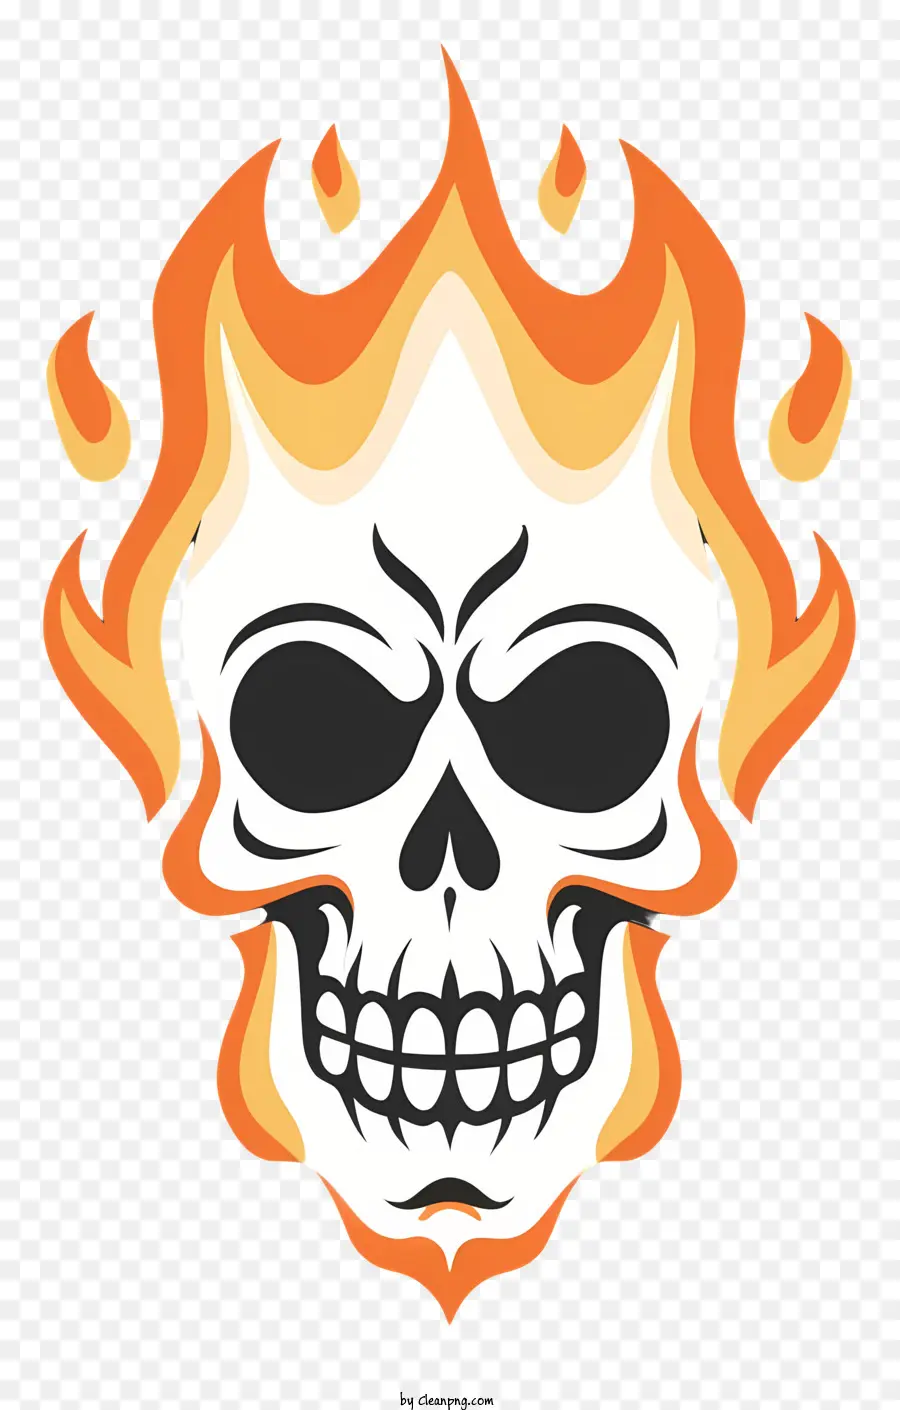 Fiamme del cranio morte oscura pericolosa - Il cranio avvolto in fiamme simboleggia il pericolo e la paura